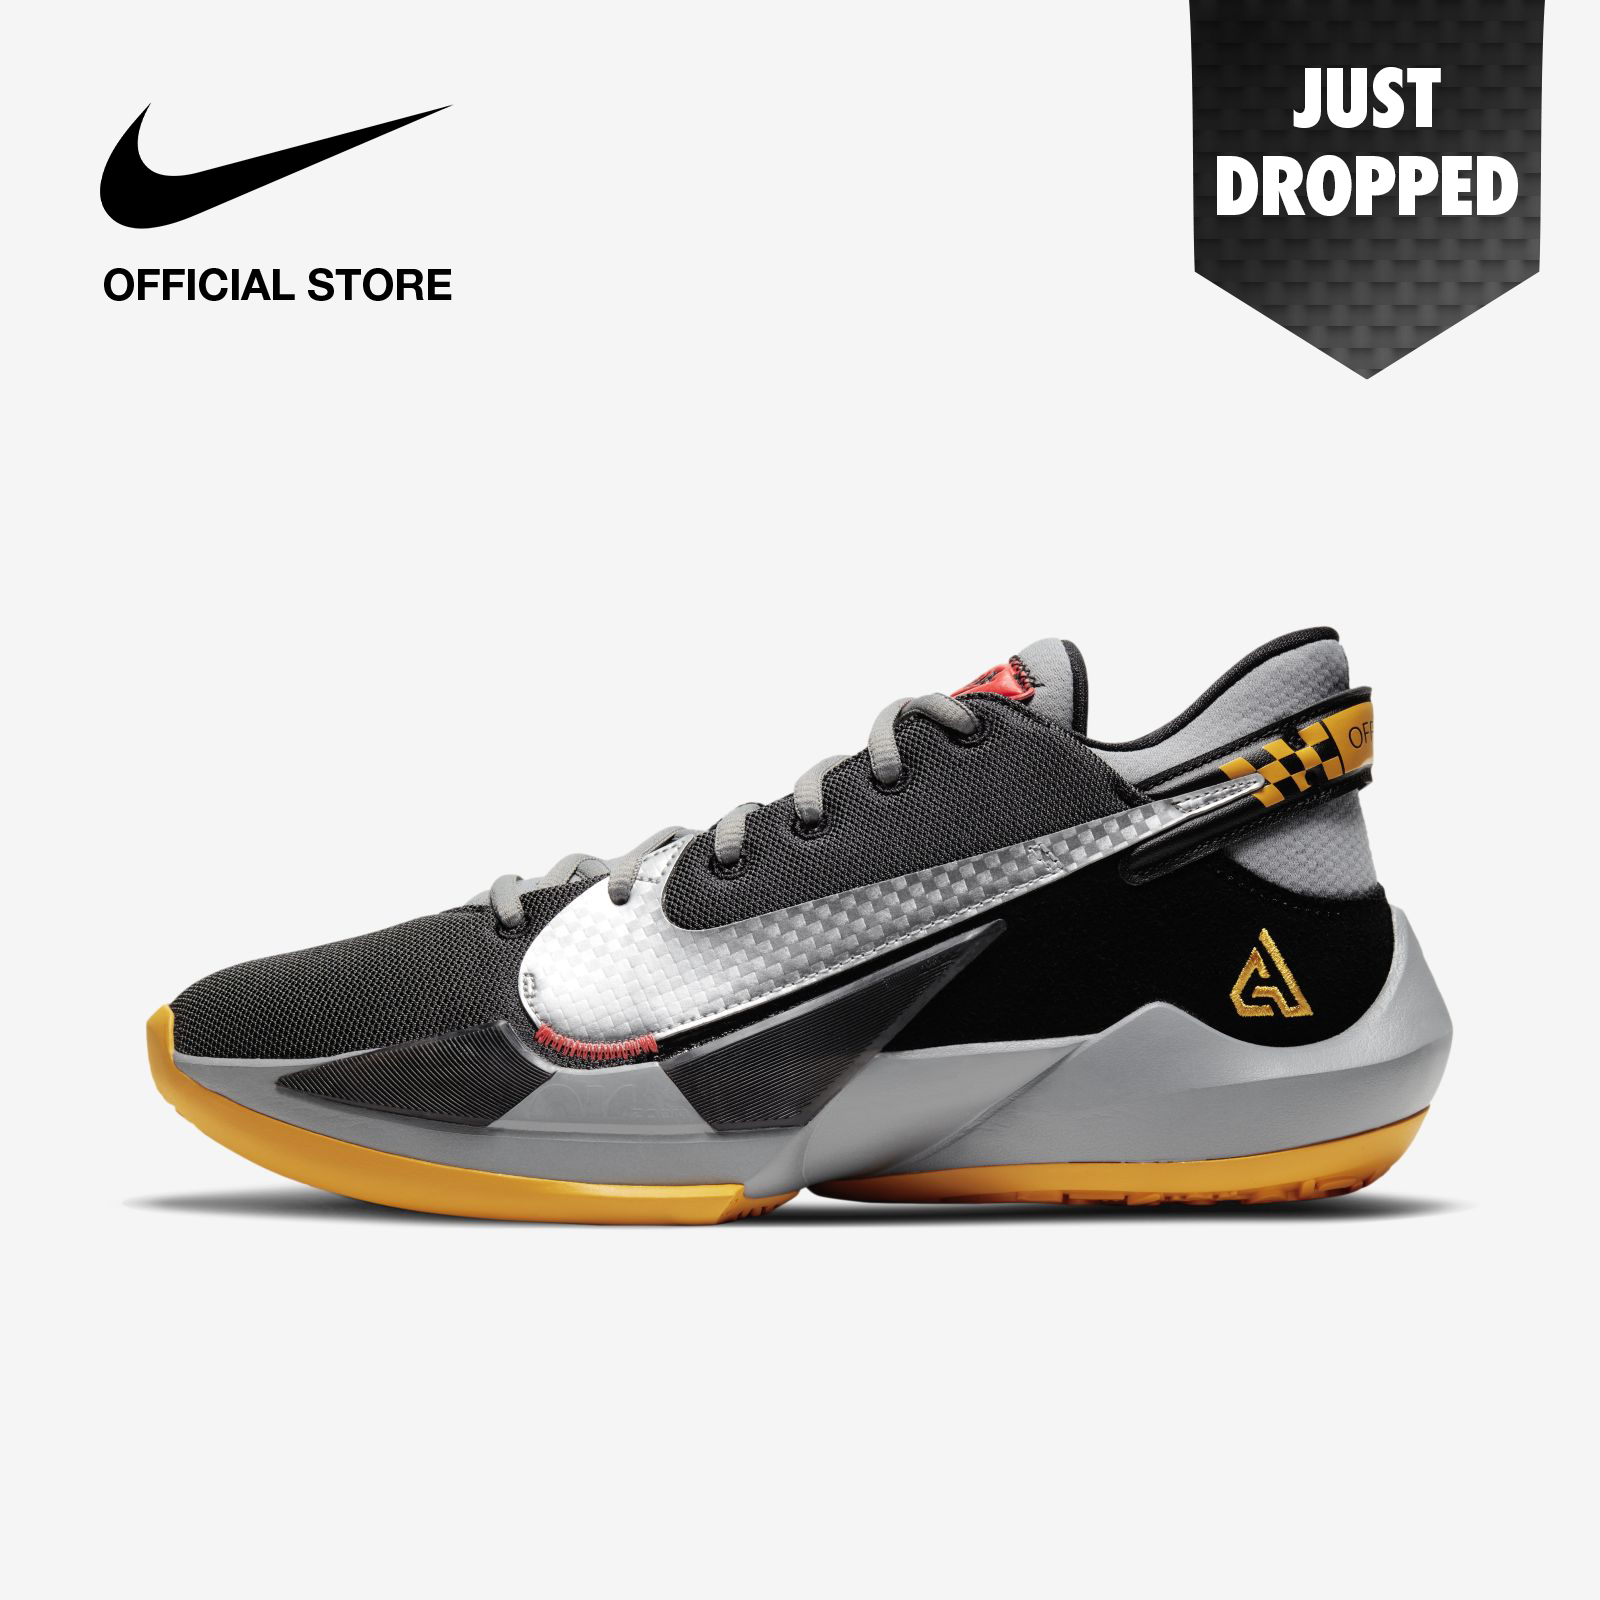 Nike Men's Freak 2 Basketball Shoes - Black ไนกี้ รองเท้าบาสเก็ตบอลชาย ฟรีค 2 - สีดำ